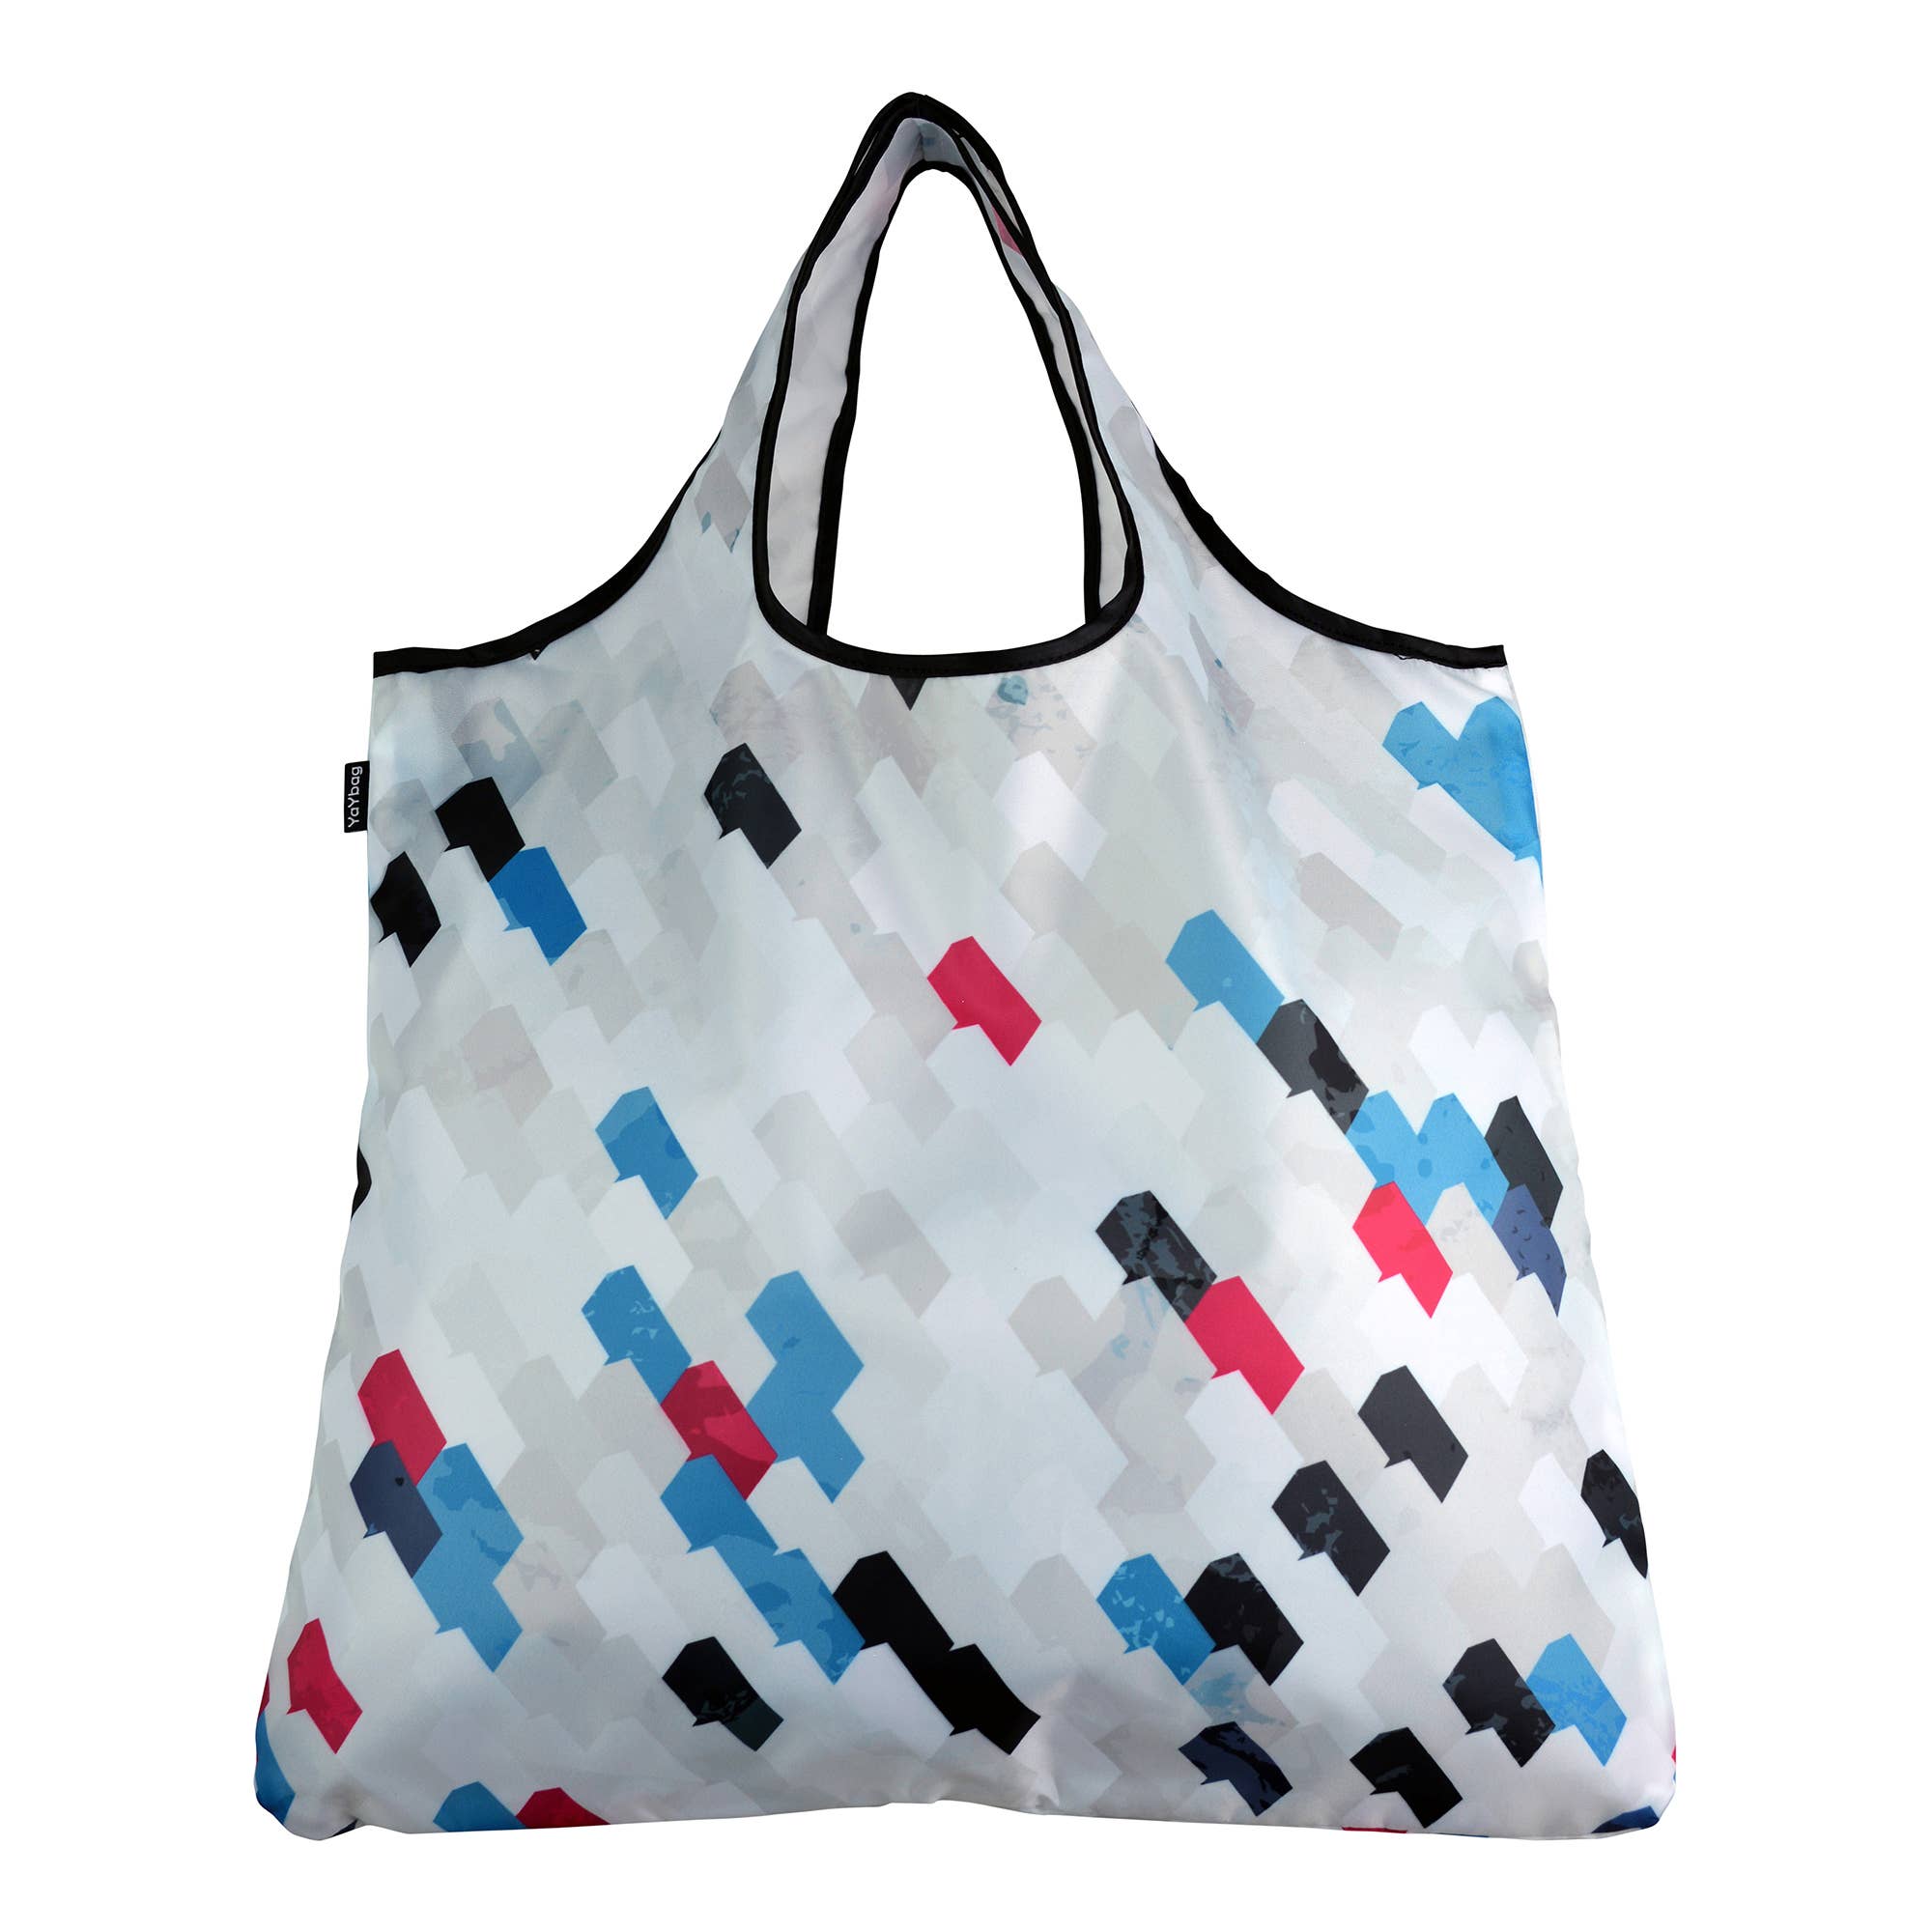 Reusable Shopping Bags Stylish YaYbag JUMBO High Quality Washable J4390 